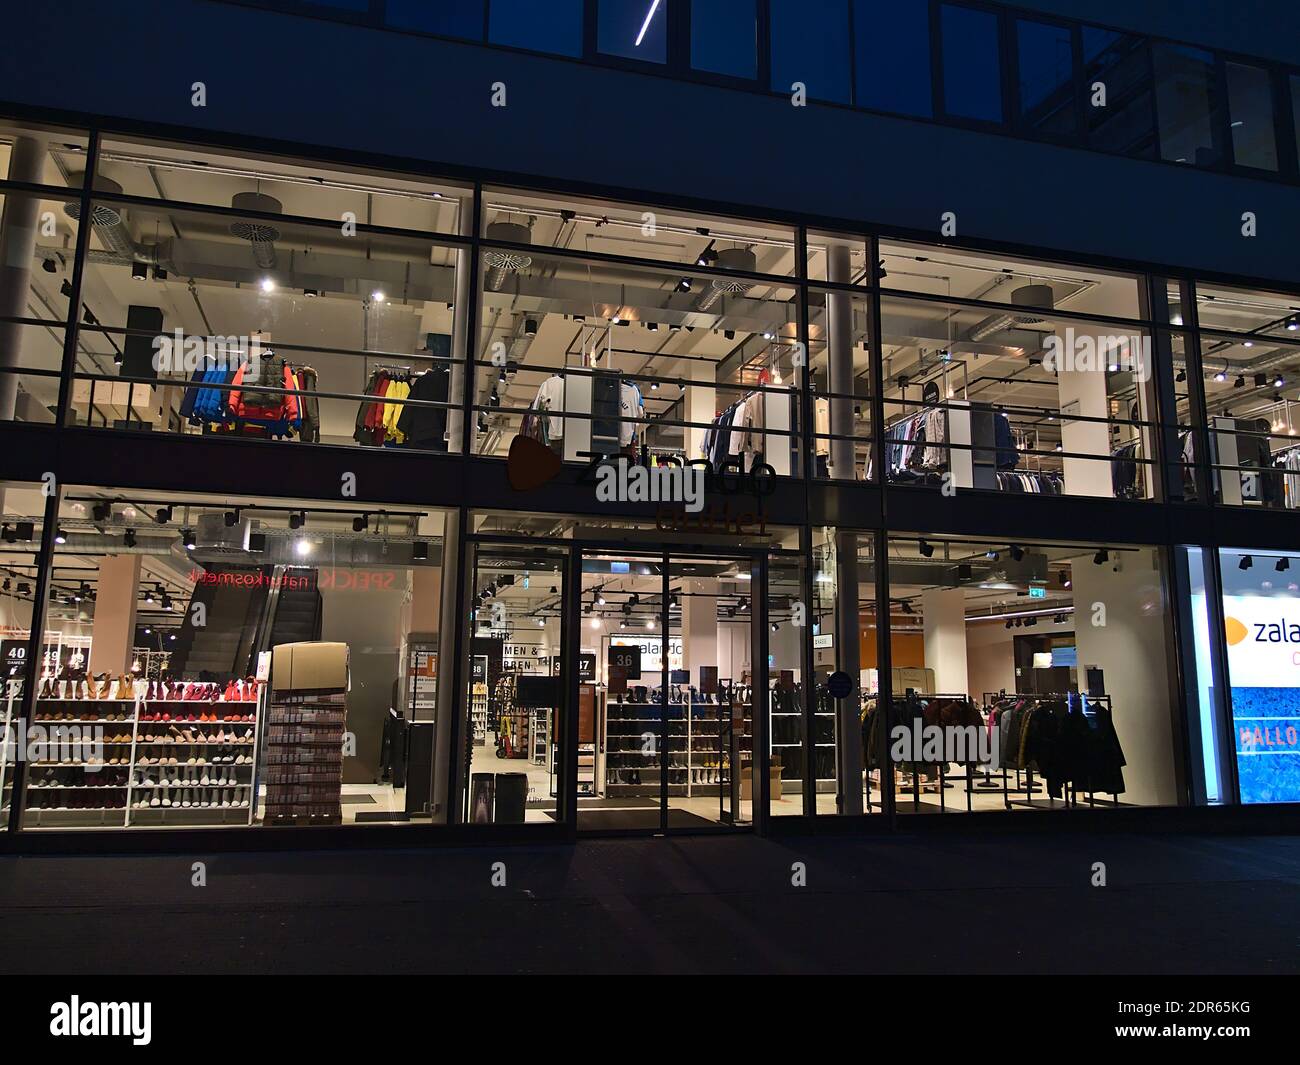 Vue de face du magasin d'usine Zalando fermé, qui vend principalement des  chaussures et des vêtements, dans le centre-ville avec des fenêtres  éclairées pendant le confinement de Covid-19 Photo Stock - Alamy